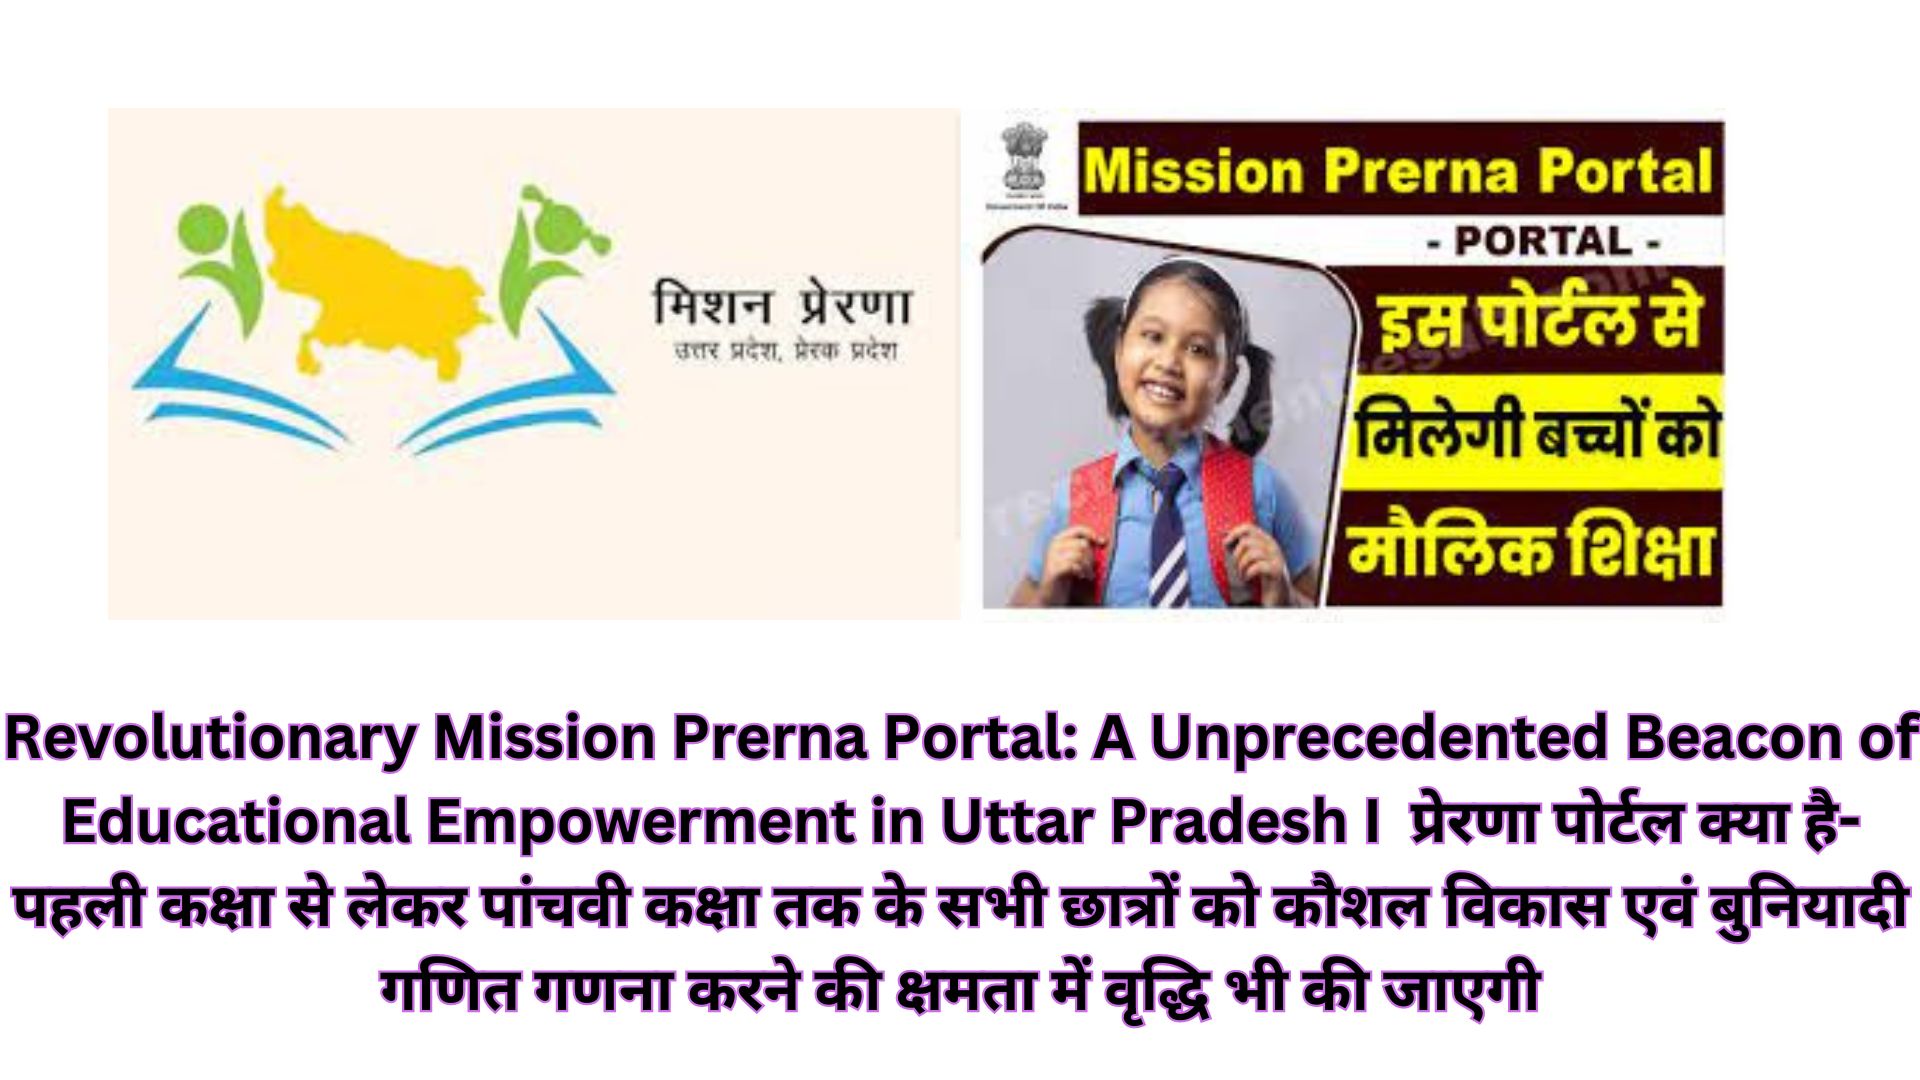 Revolutionary Mission Prerna Portal: A Unprecedented Beacon of Educational Empowerment in Uttar Pradesh I प्रेरणा पोर्टल क्या है- पहली कक्षा से लेकर पांचवी कक्षा तक के सभी छात्रों को कौशल विकास एवं बुनियादी गणित गणना करने की क्षमता में वृद्धि भी की जाएगी